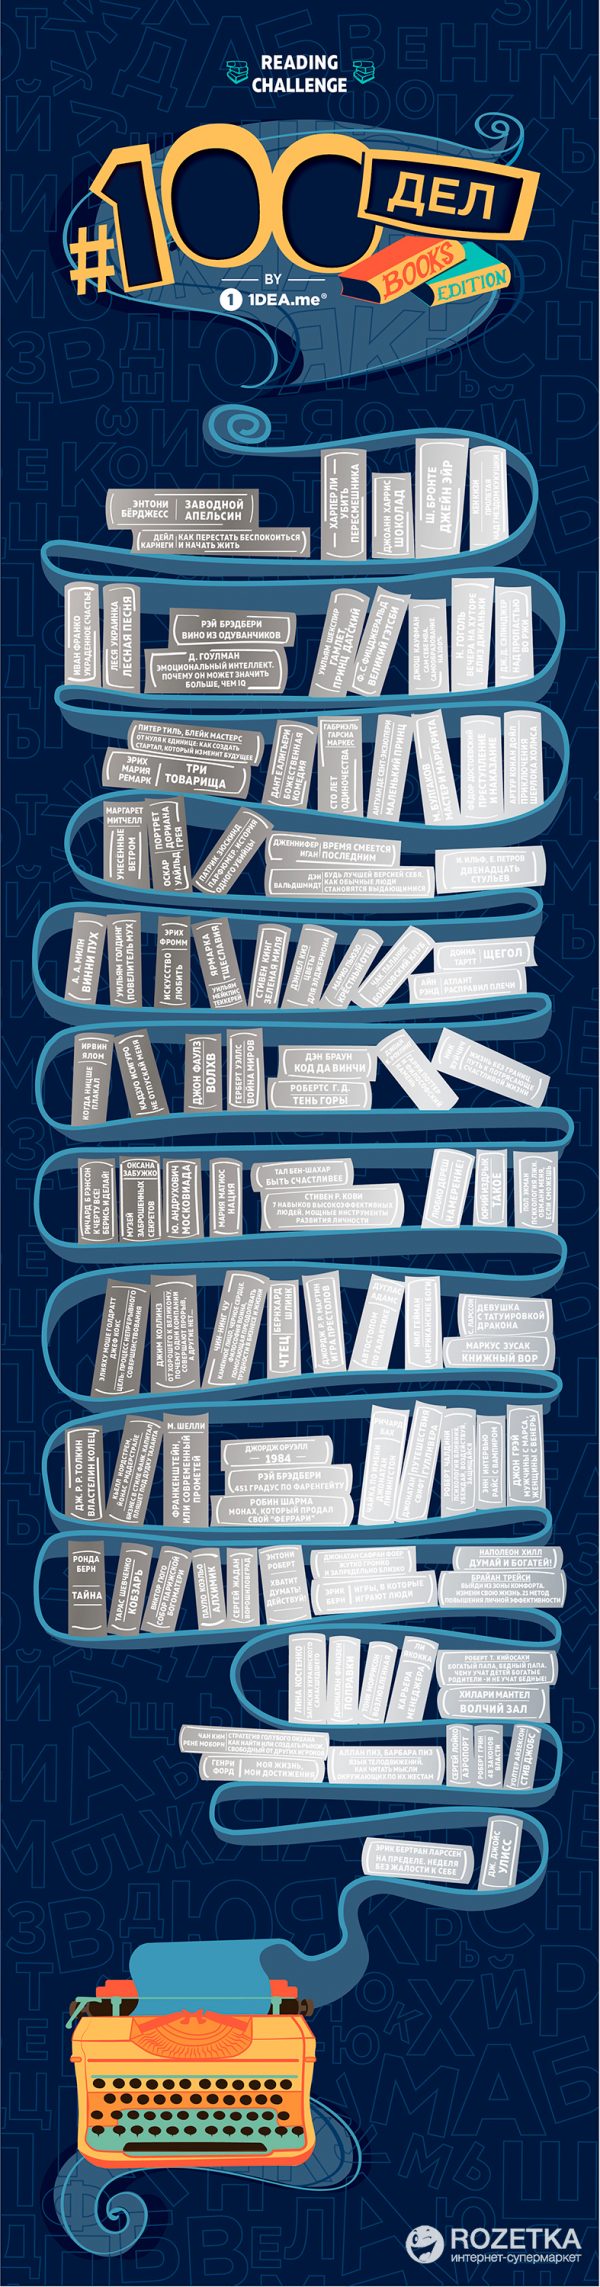 Скретч-постер 1DEA.me «100 Дел Books Edition»